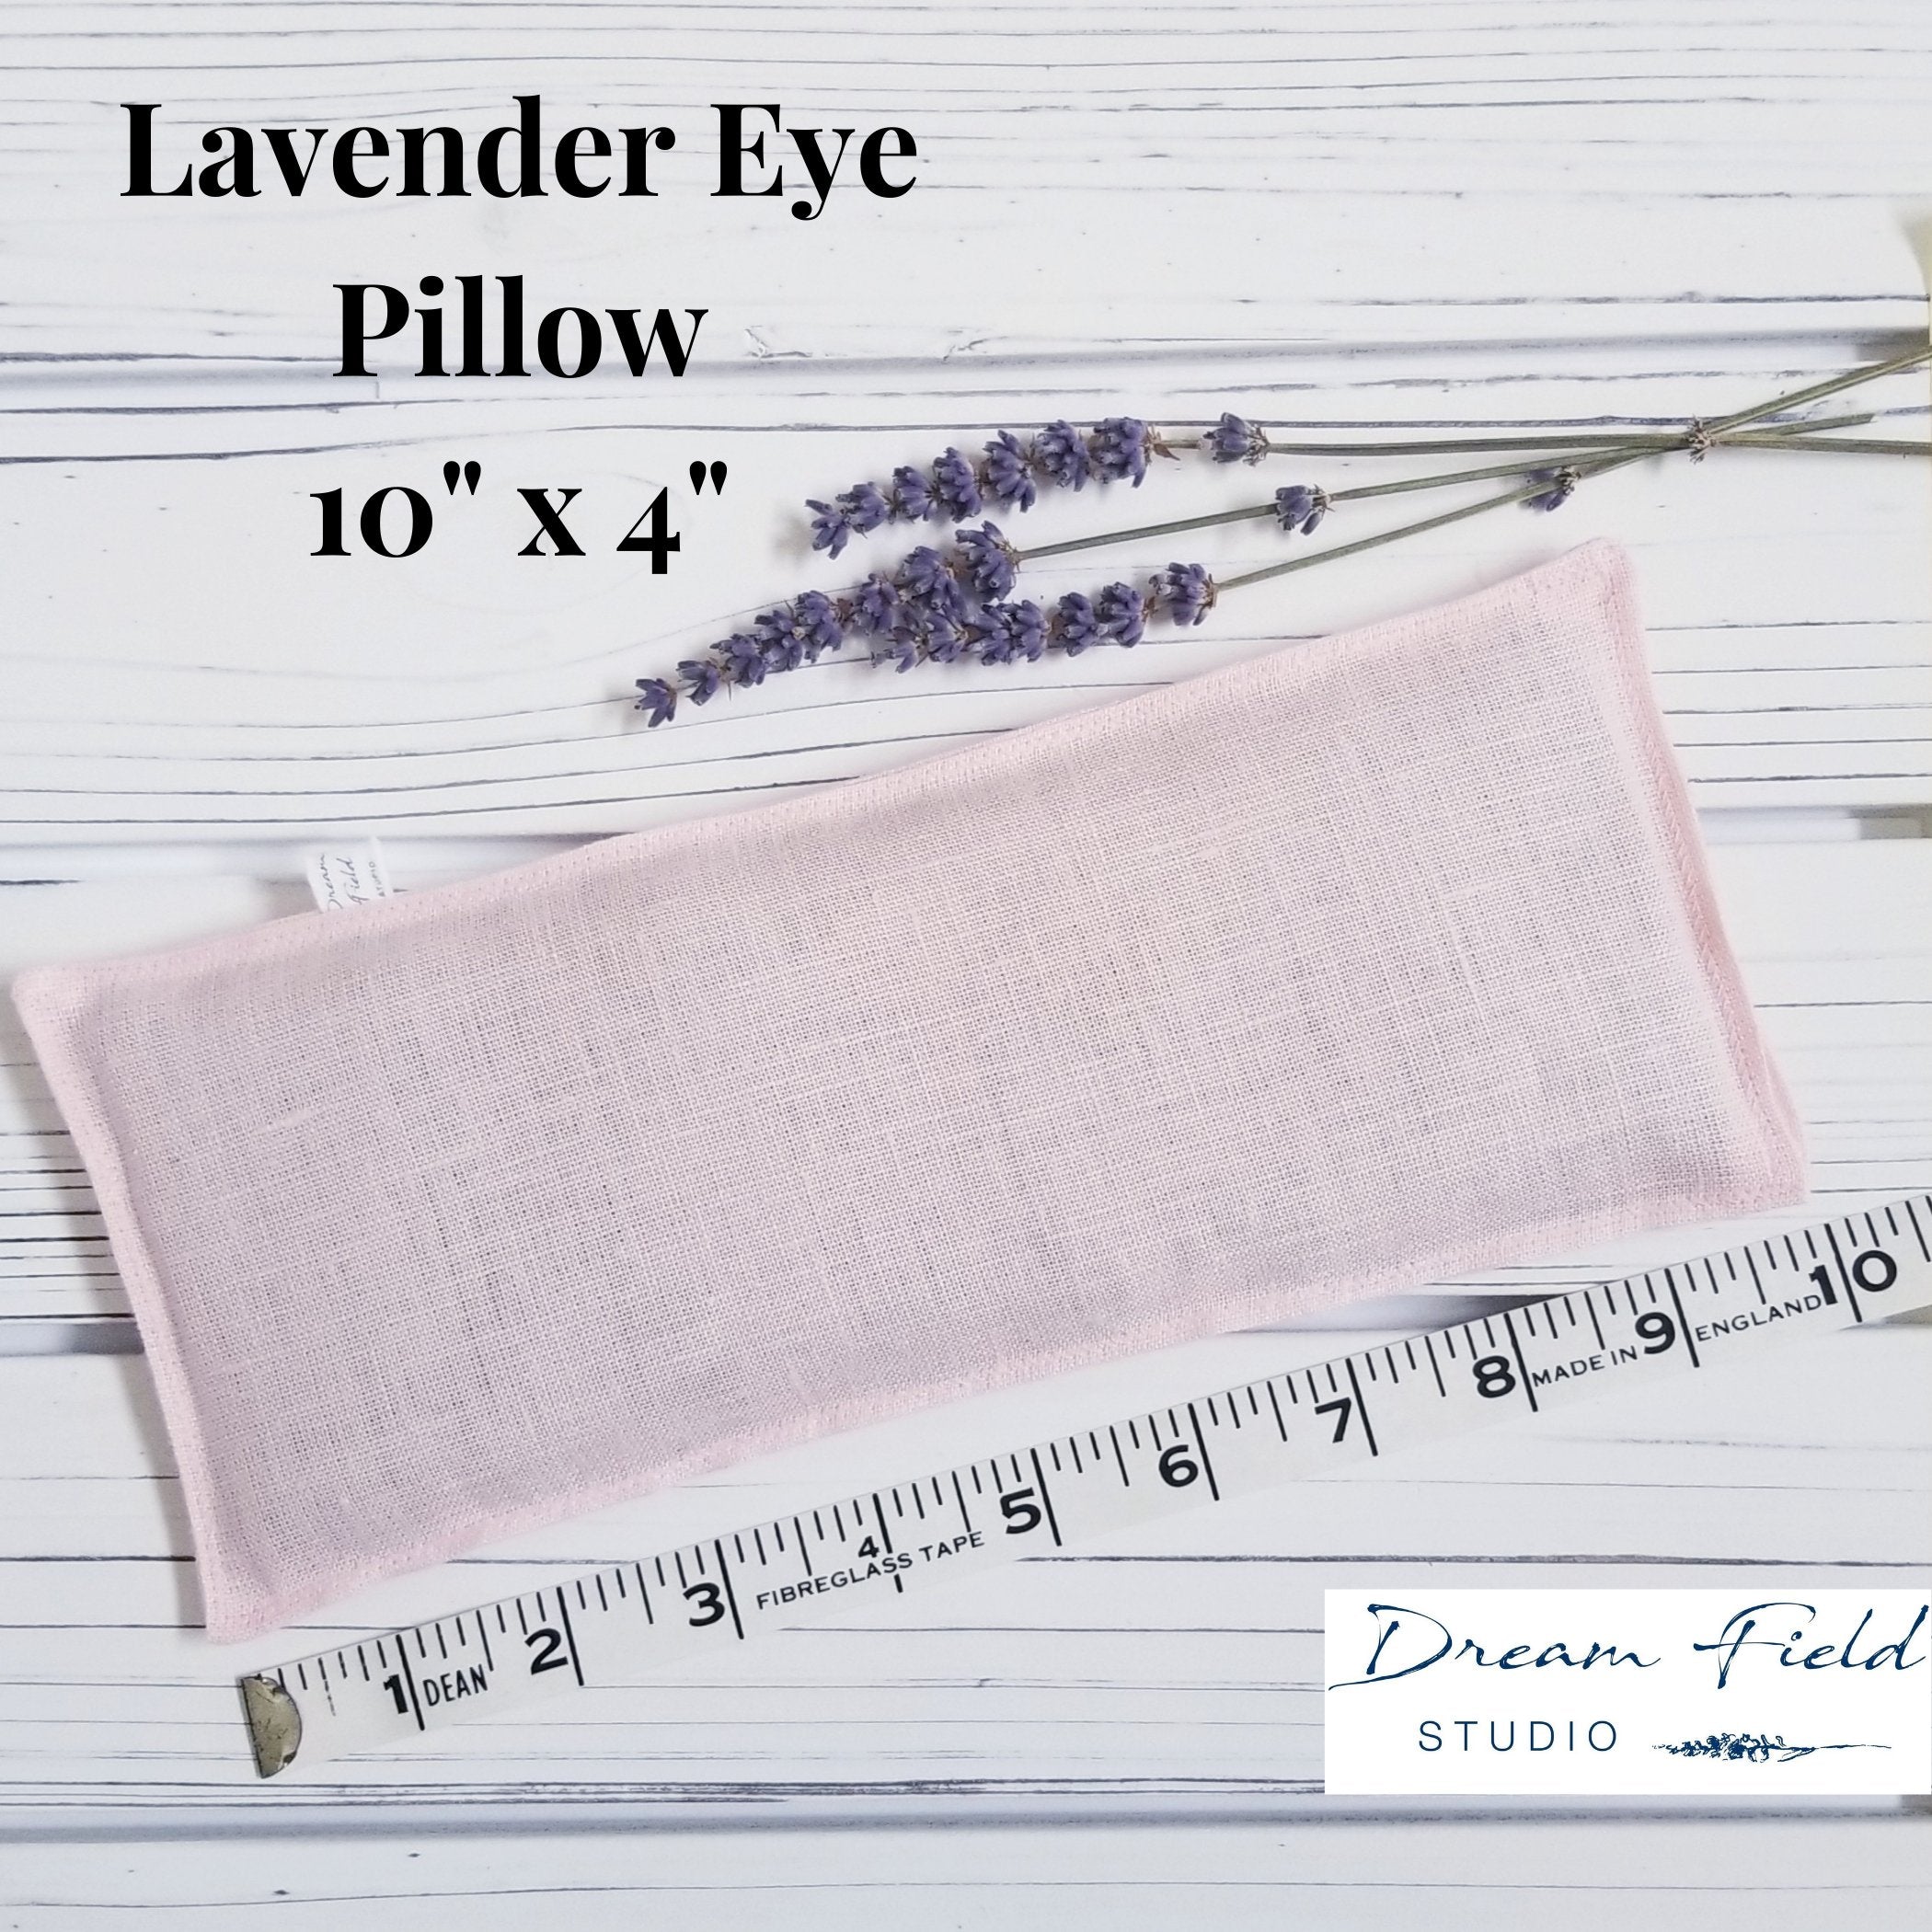 lavender eye pillow size 10 x 4"